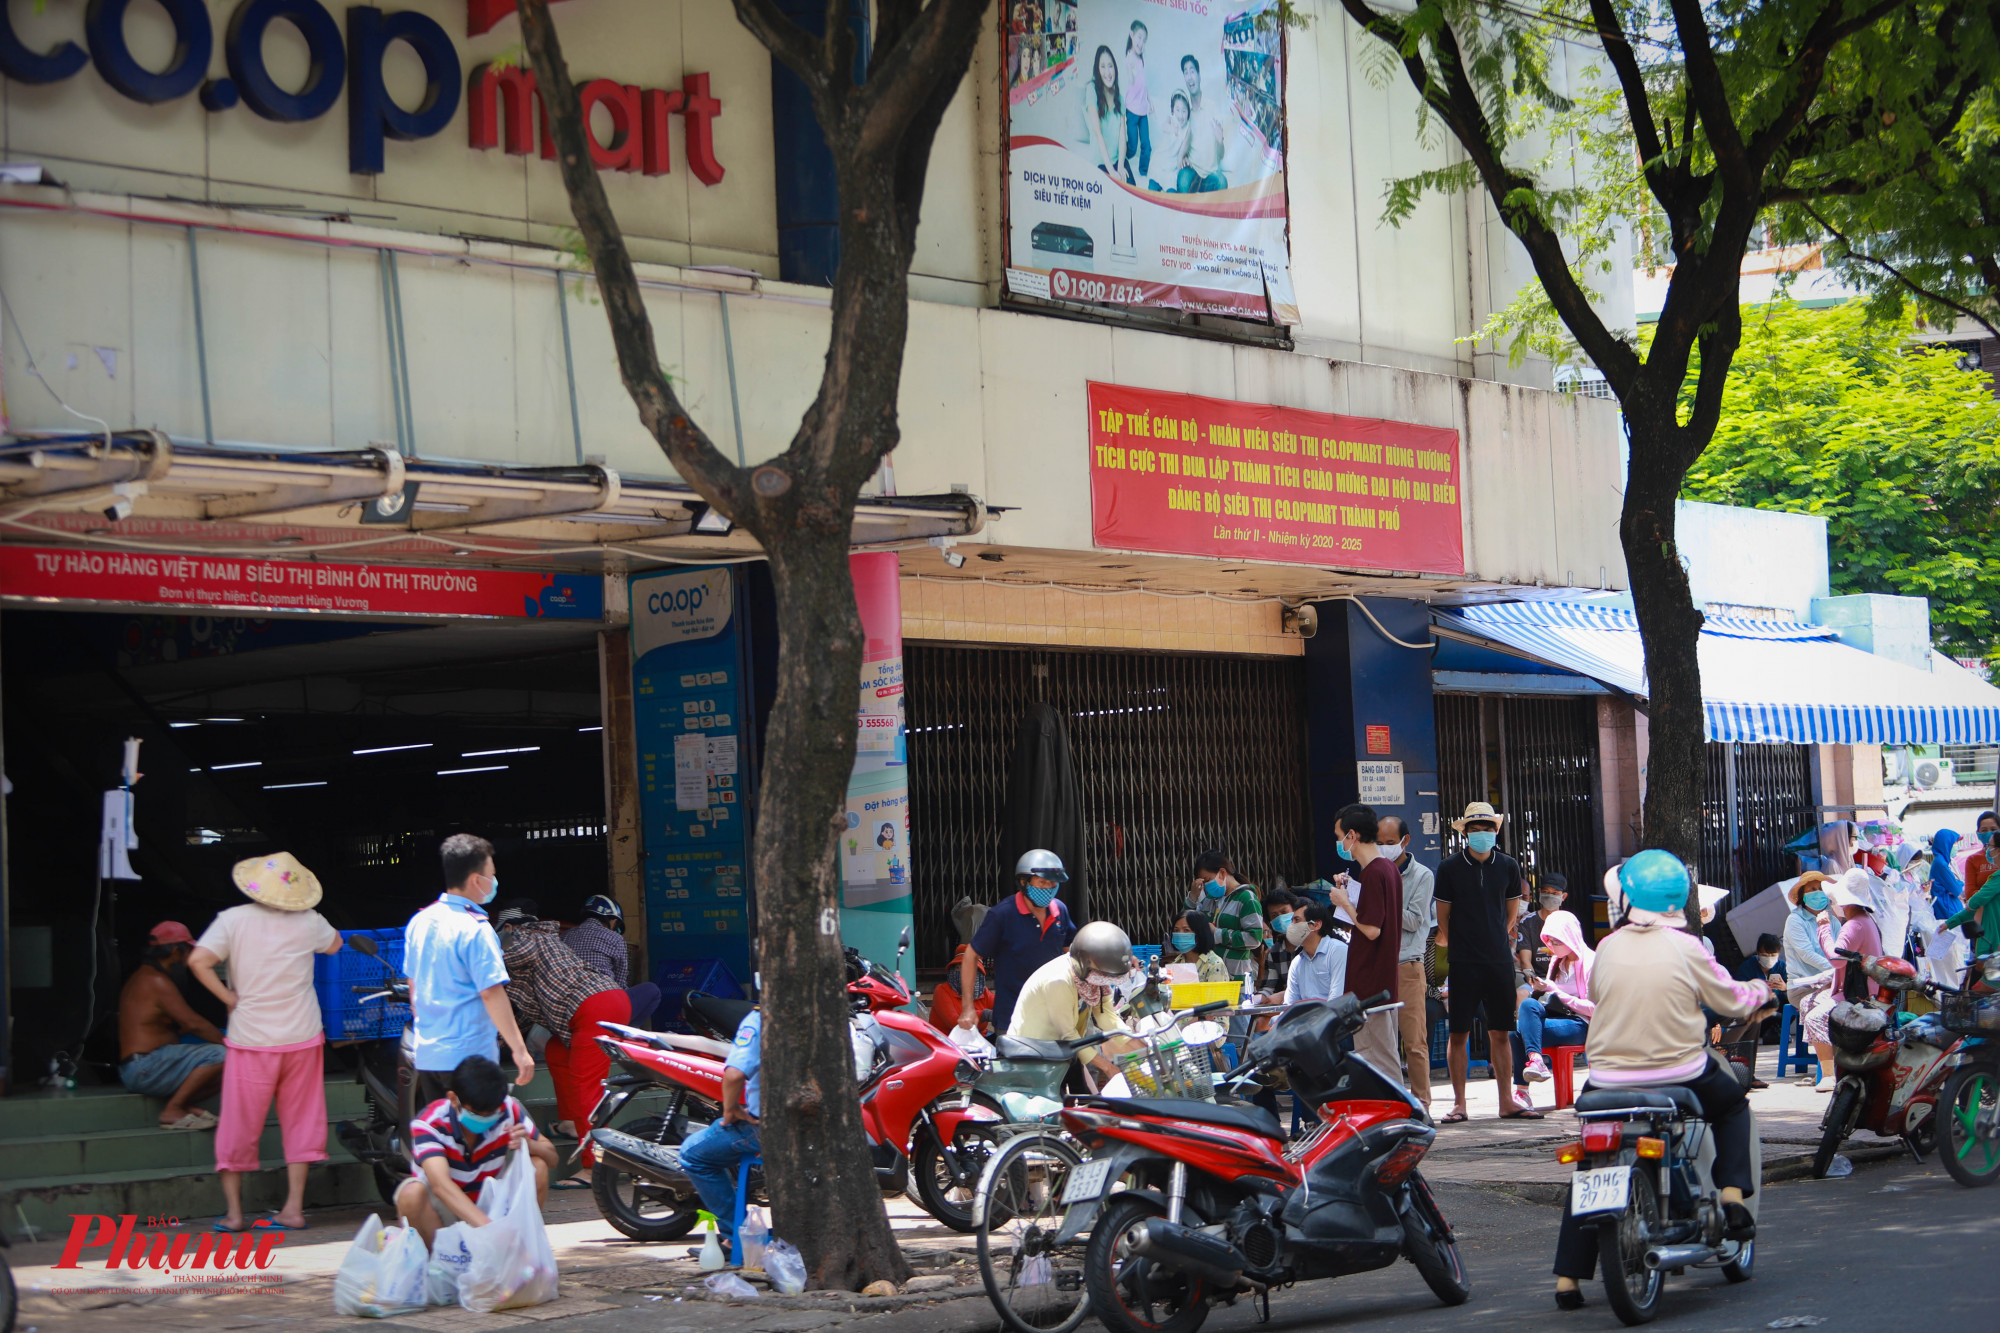 Một siêu thị trên đường Hùng Vương (Quận 5), với đoàn người nối đuôi nhay chờ đến lượt mua hàng